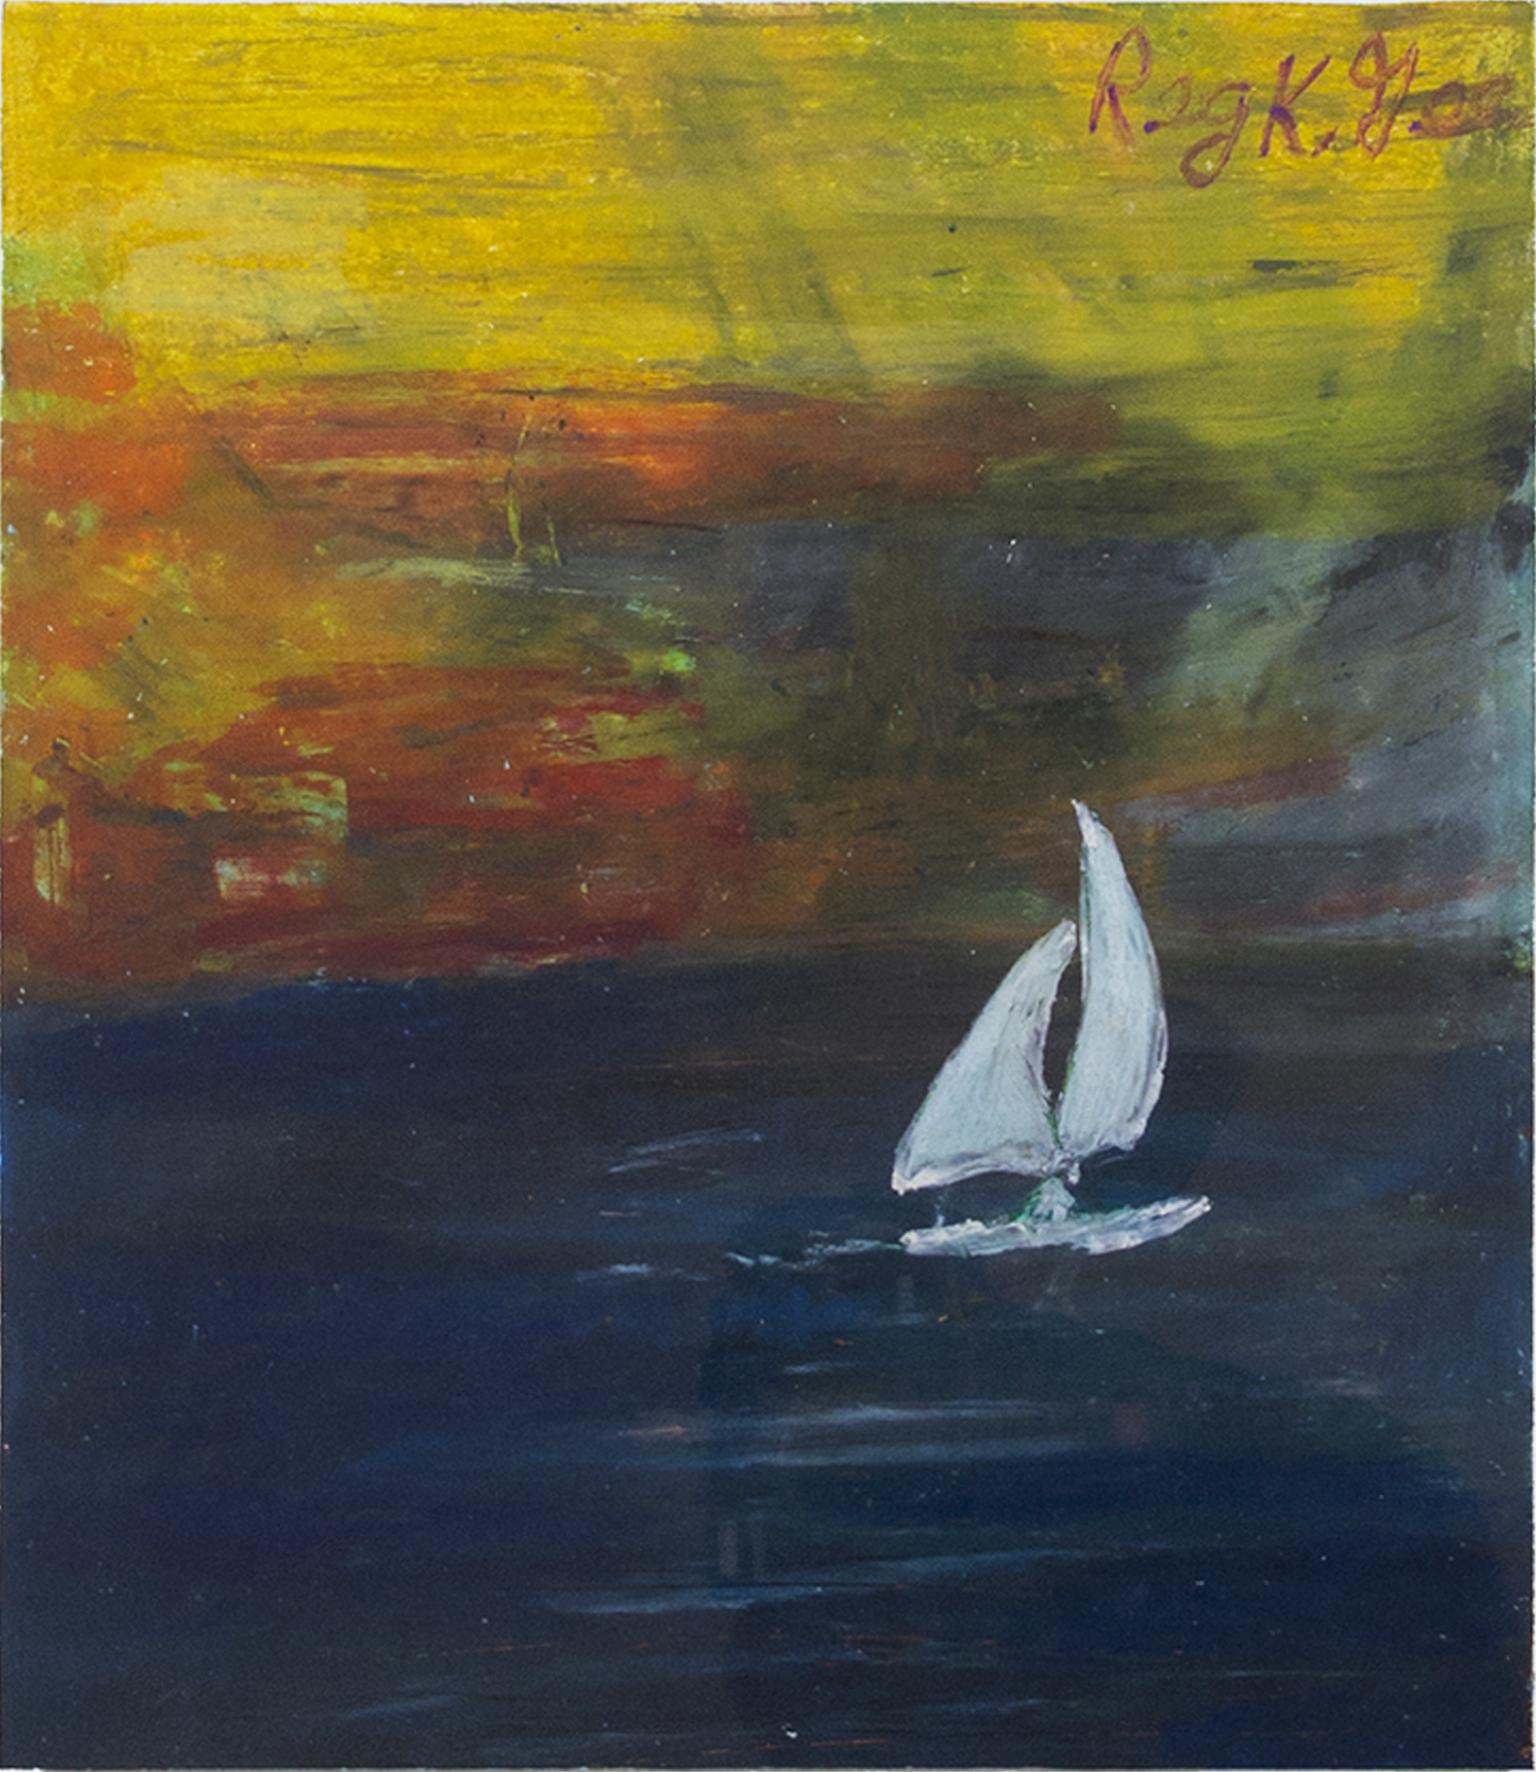 "Coasting Sailboat" est un dessin original au pastel de Reginald K. Gee. L'artiste a signé l'œuvre en bas à droite. Il représente un voilier blanc sur une mer sombre avec un fond coloré. 

Taille de l'œuvre : 12" x 9"
Taille du cadre : 20 1/2" x 18